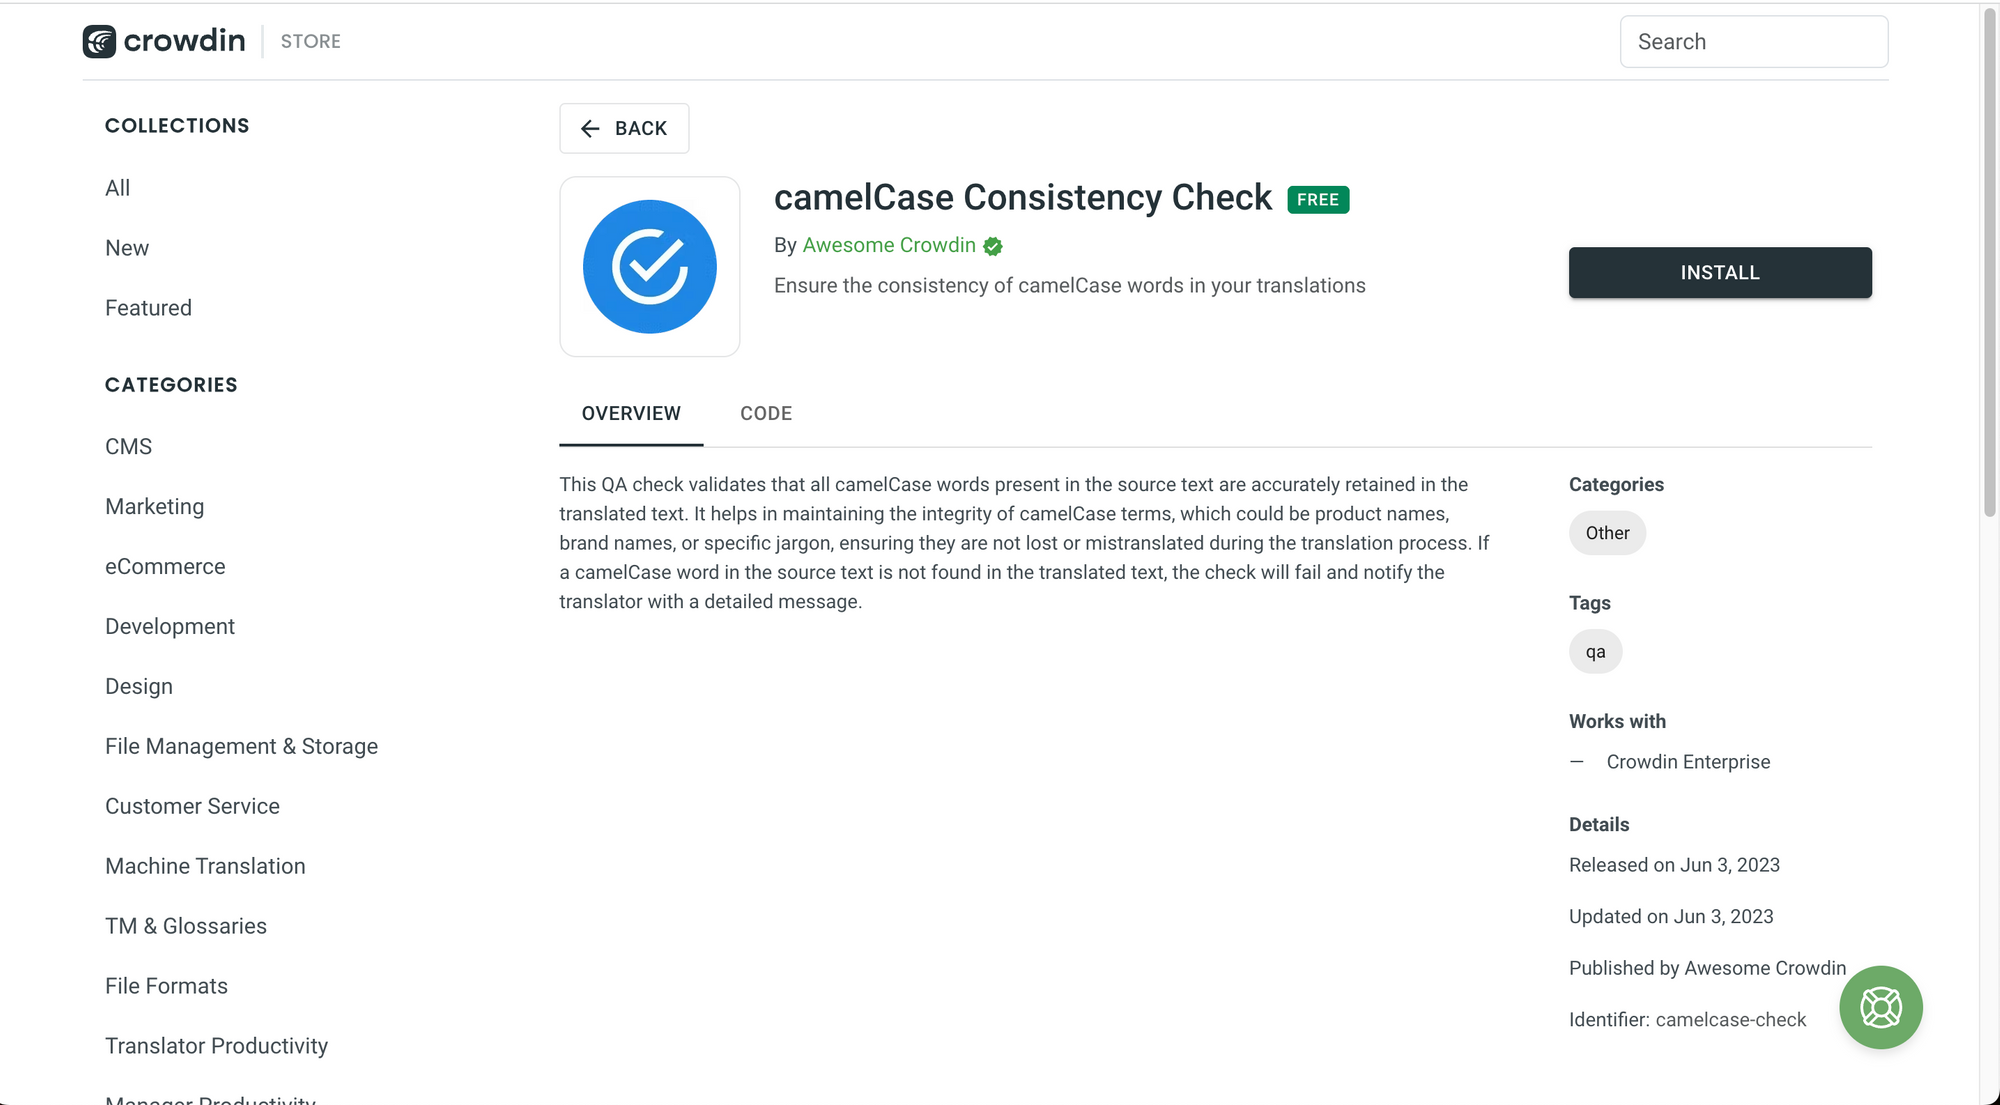 camelcase-consistency-check